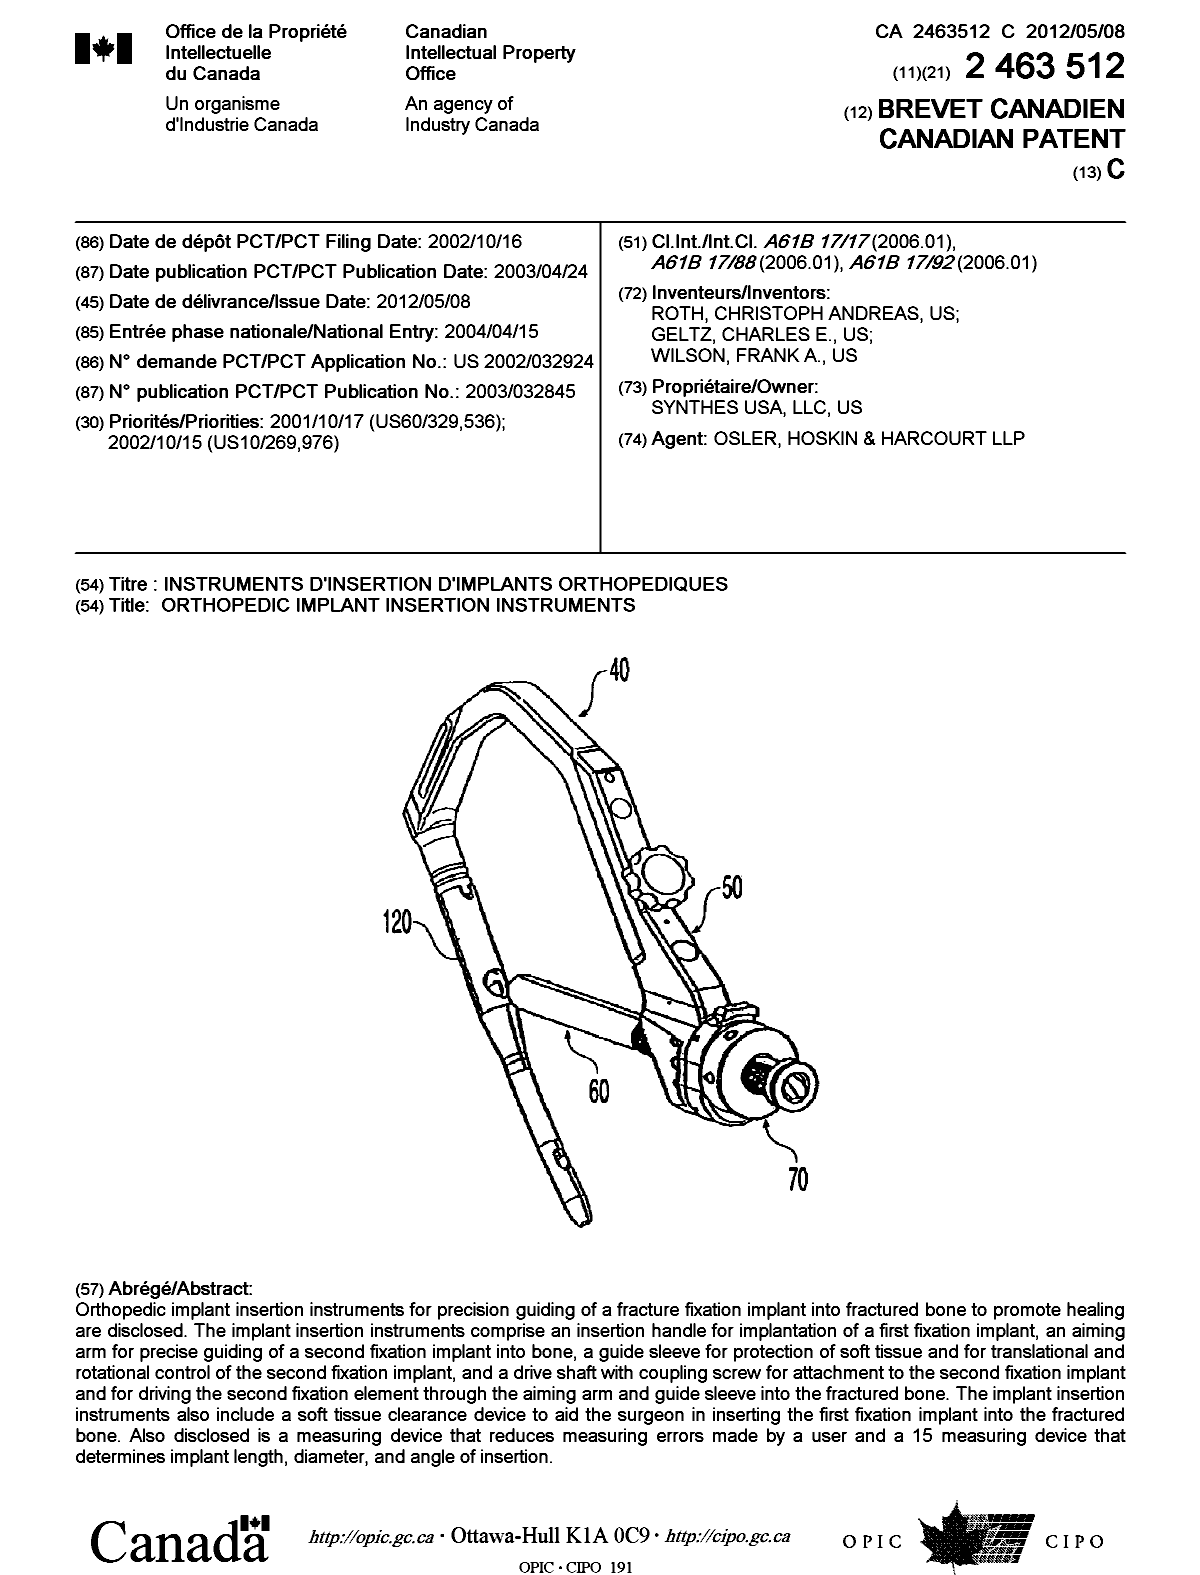 Document de brevet canadien 2463512. Page couverture 20120417. Image 1 de 1